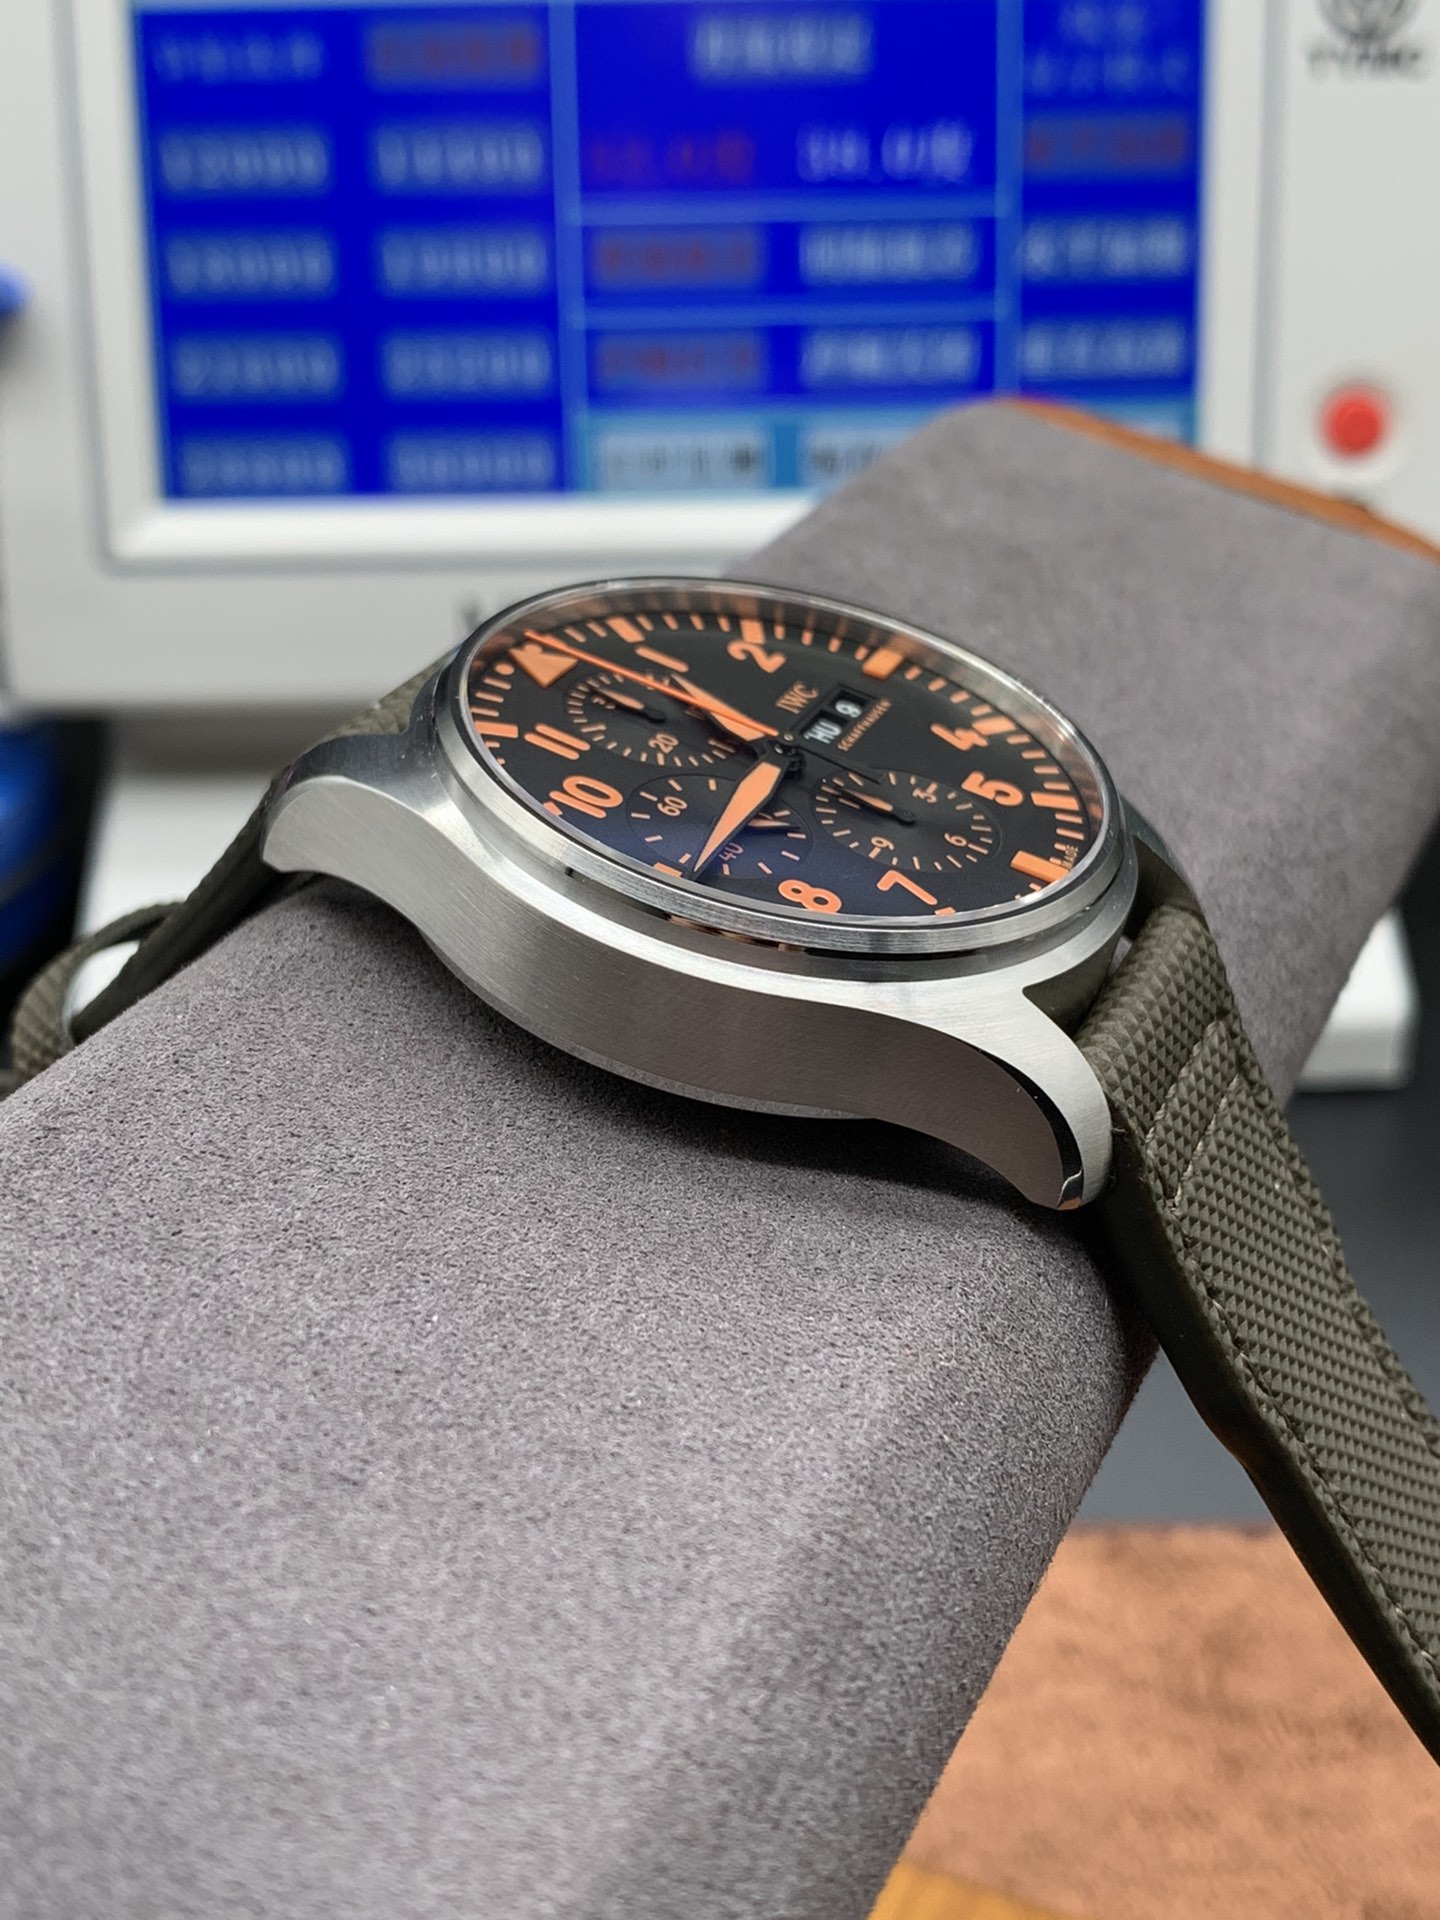 2022122411430975 - 萬國復刻錶哪個廠手錶好 az廠手錶飛行員繫列 IW377730 橙色刻度 自動機械錶￥3380